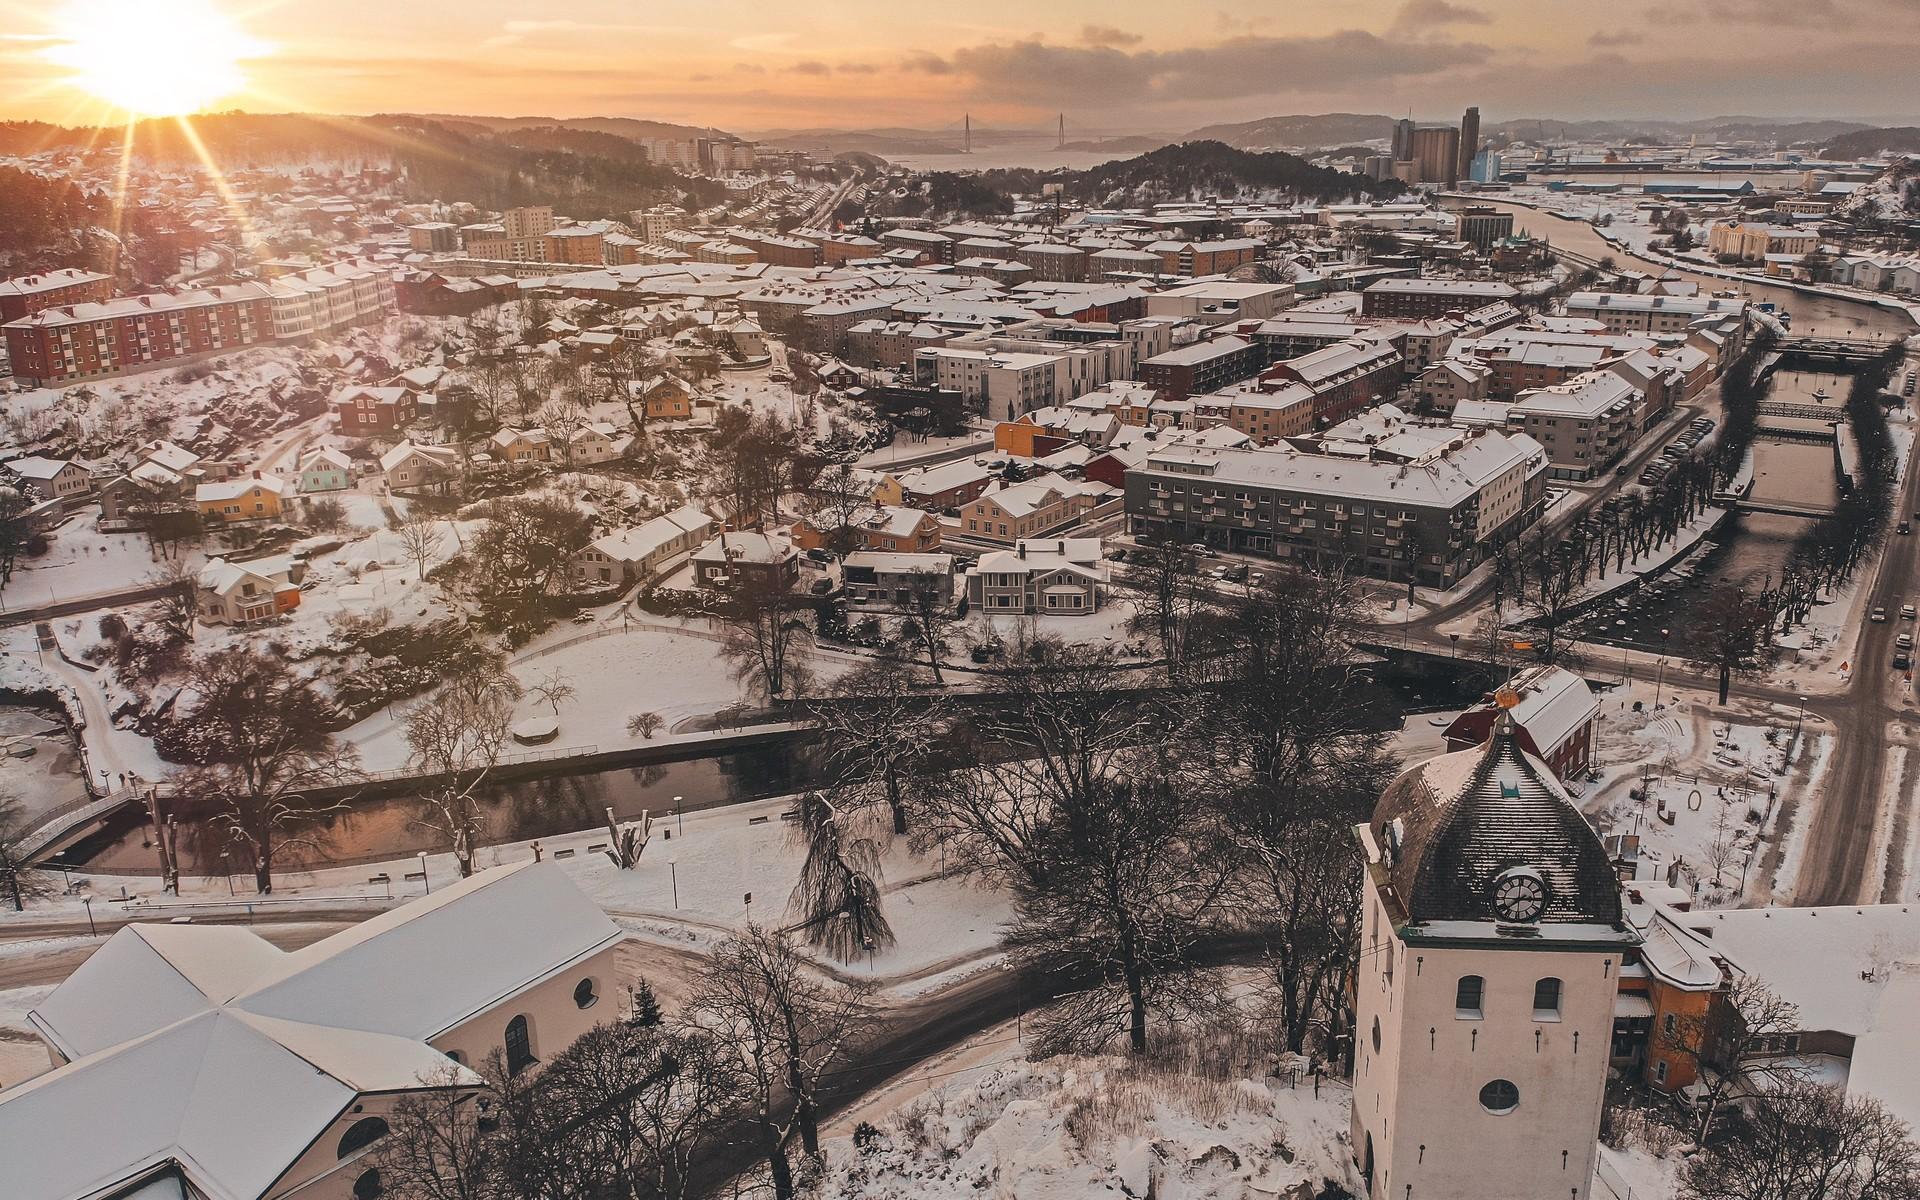 ”På min bild över Uddevalla ser man klocktornet som symboliserar staden, de julpyntade gatorna nedanför och bron i horisonten. Bild tagen december -21.”